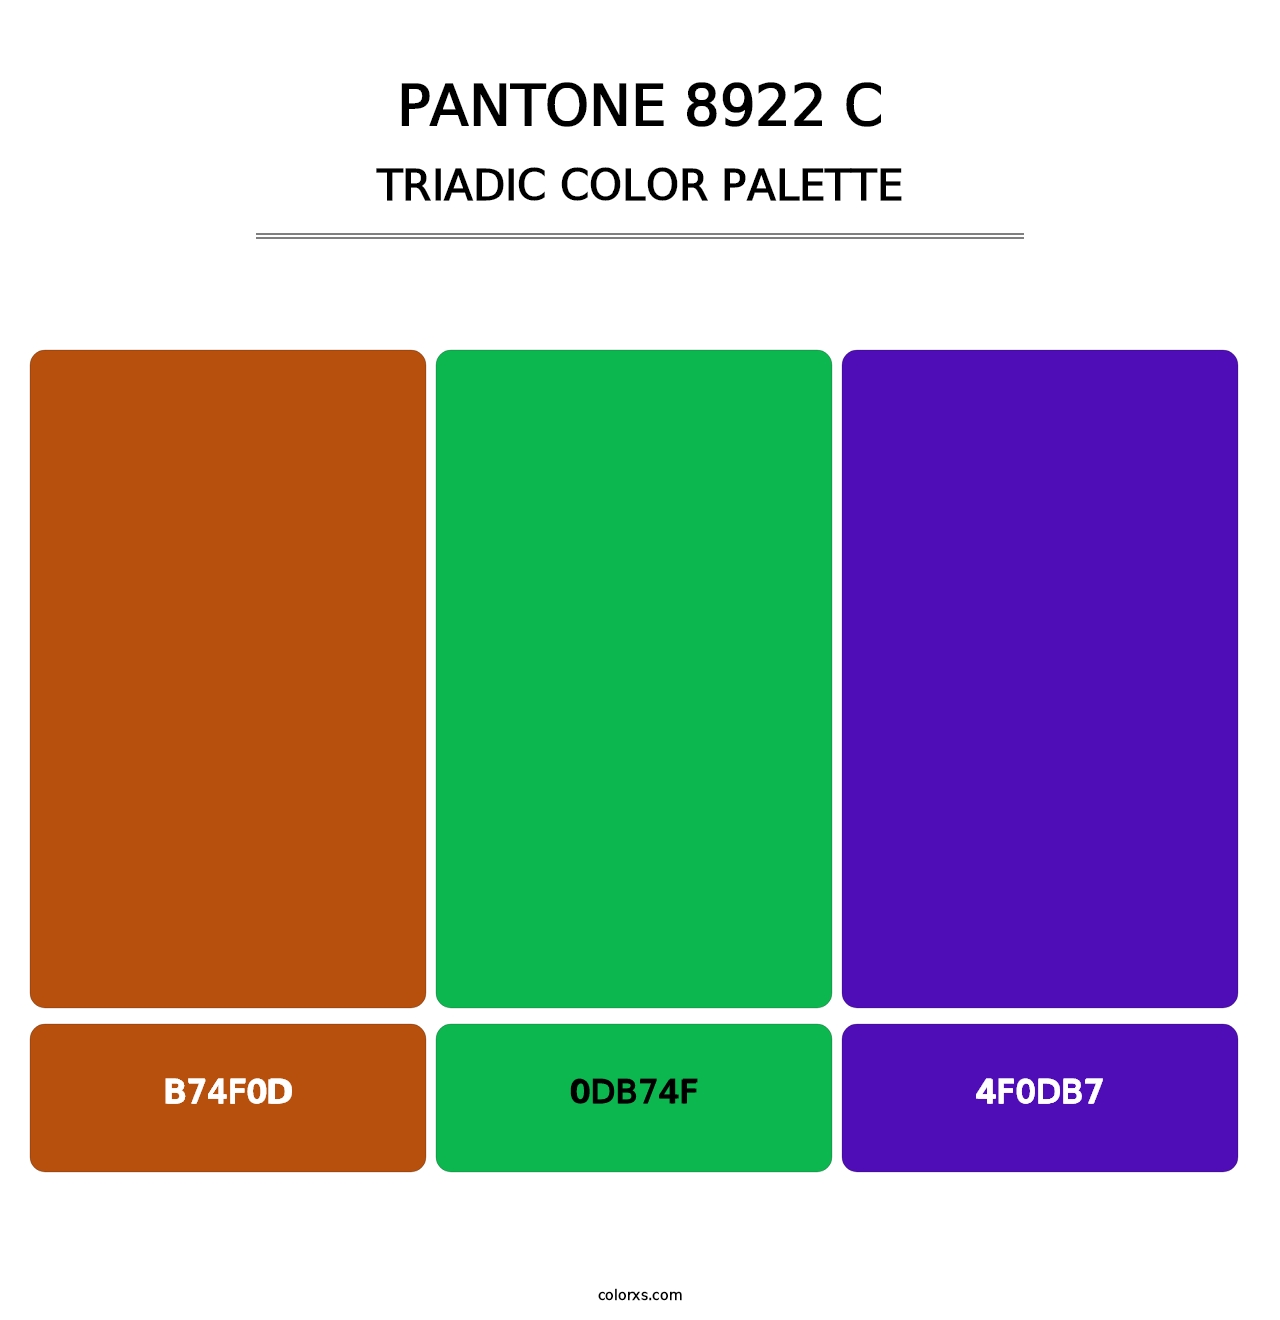 PANTONE 8922 C - Triadic Color Palette